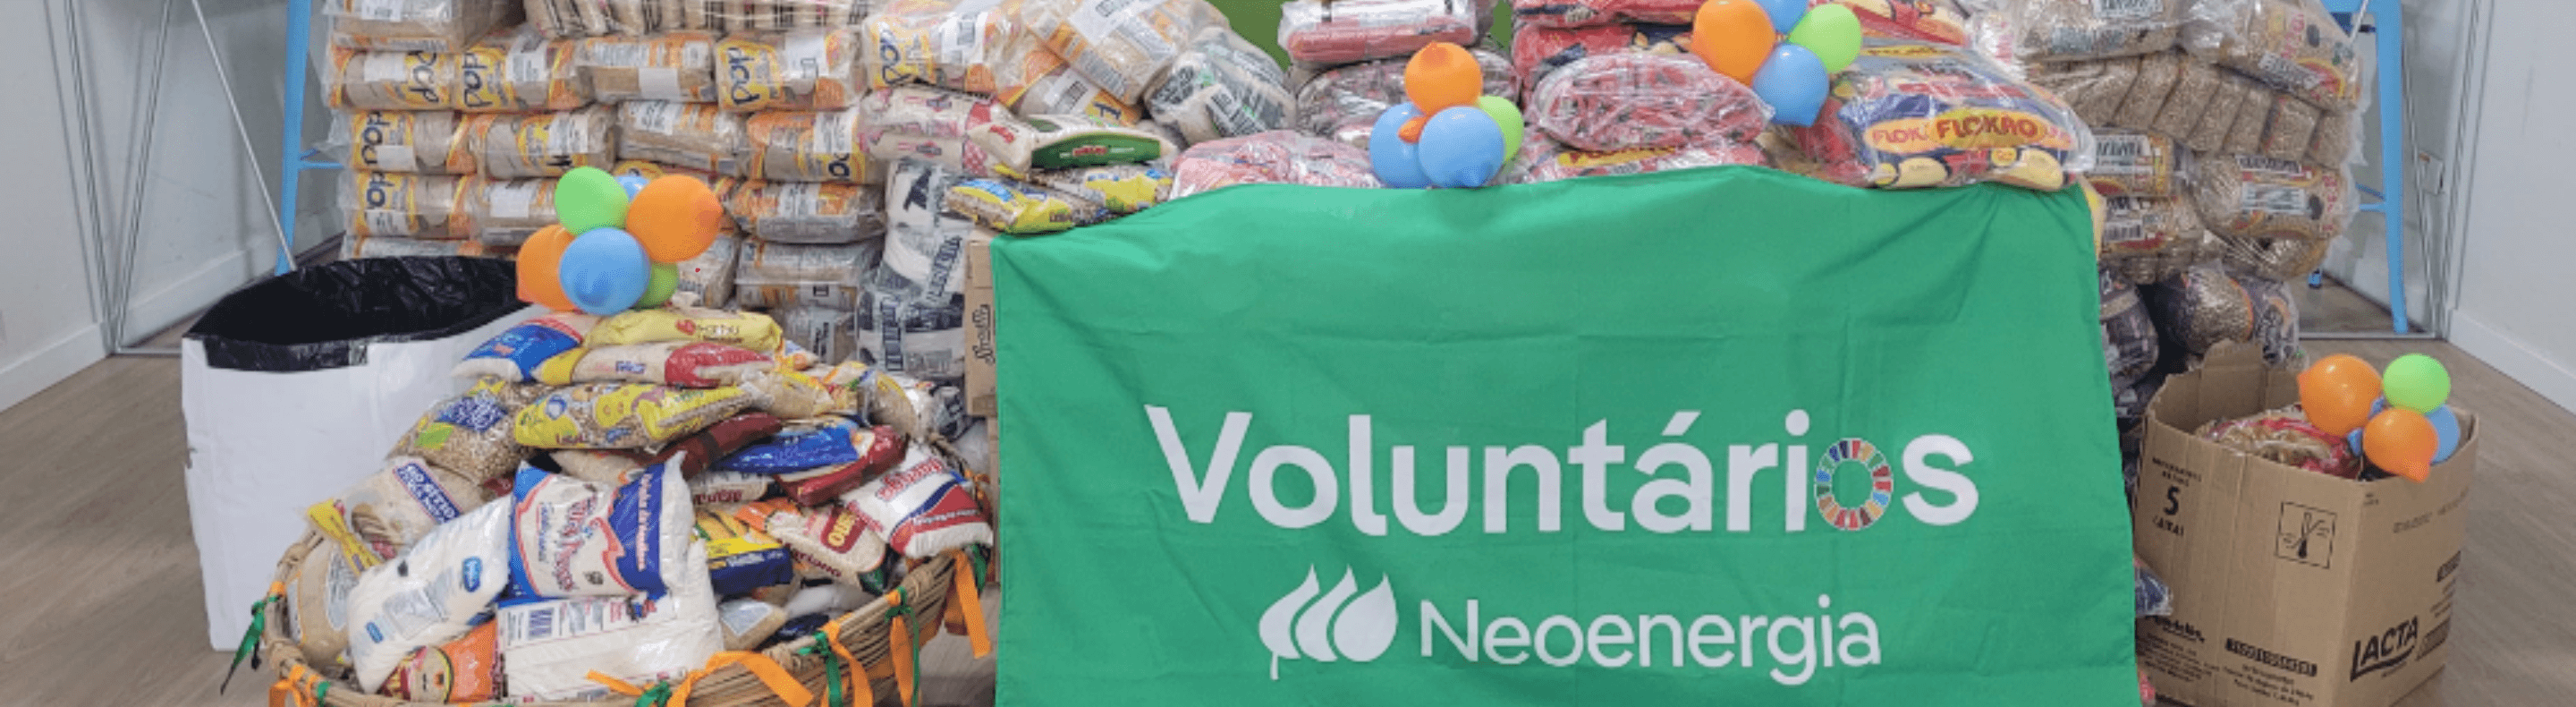 Arrecadação de alimentos do grupo de voluntários da Neoenergia